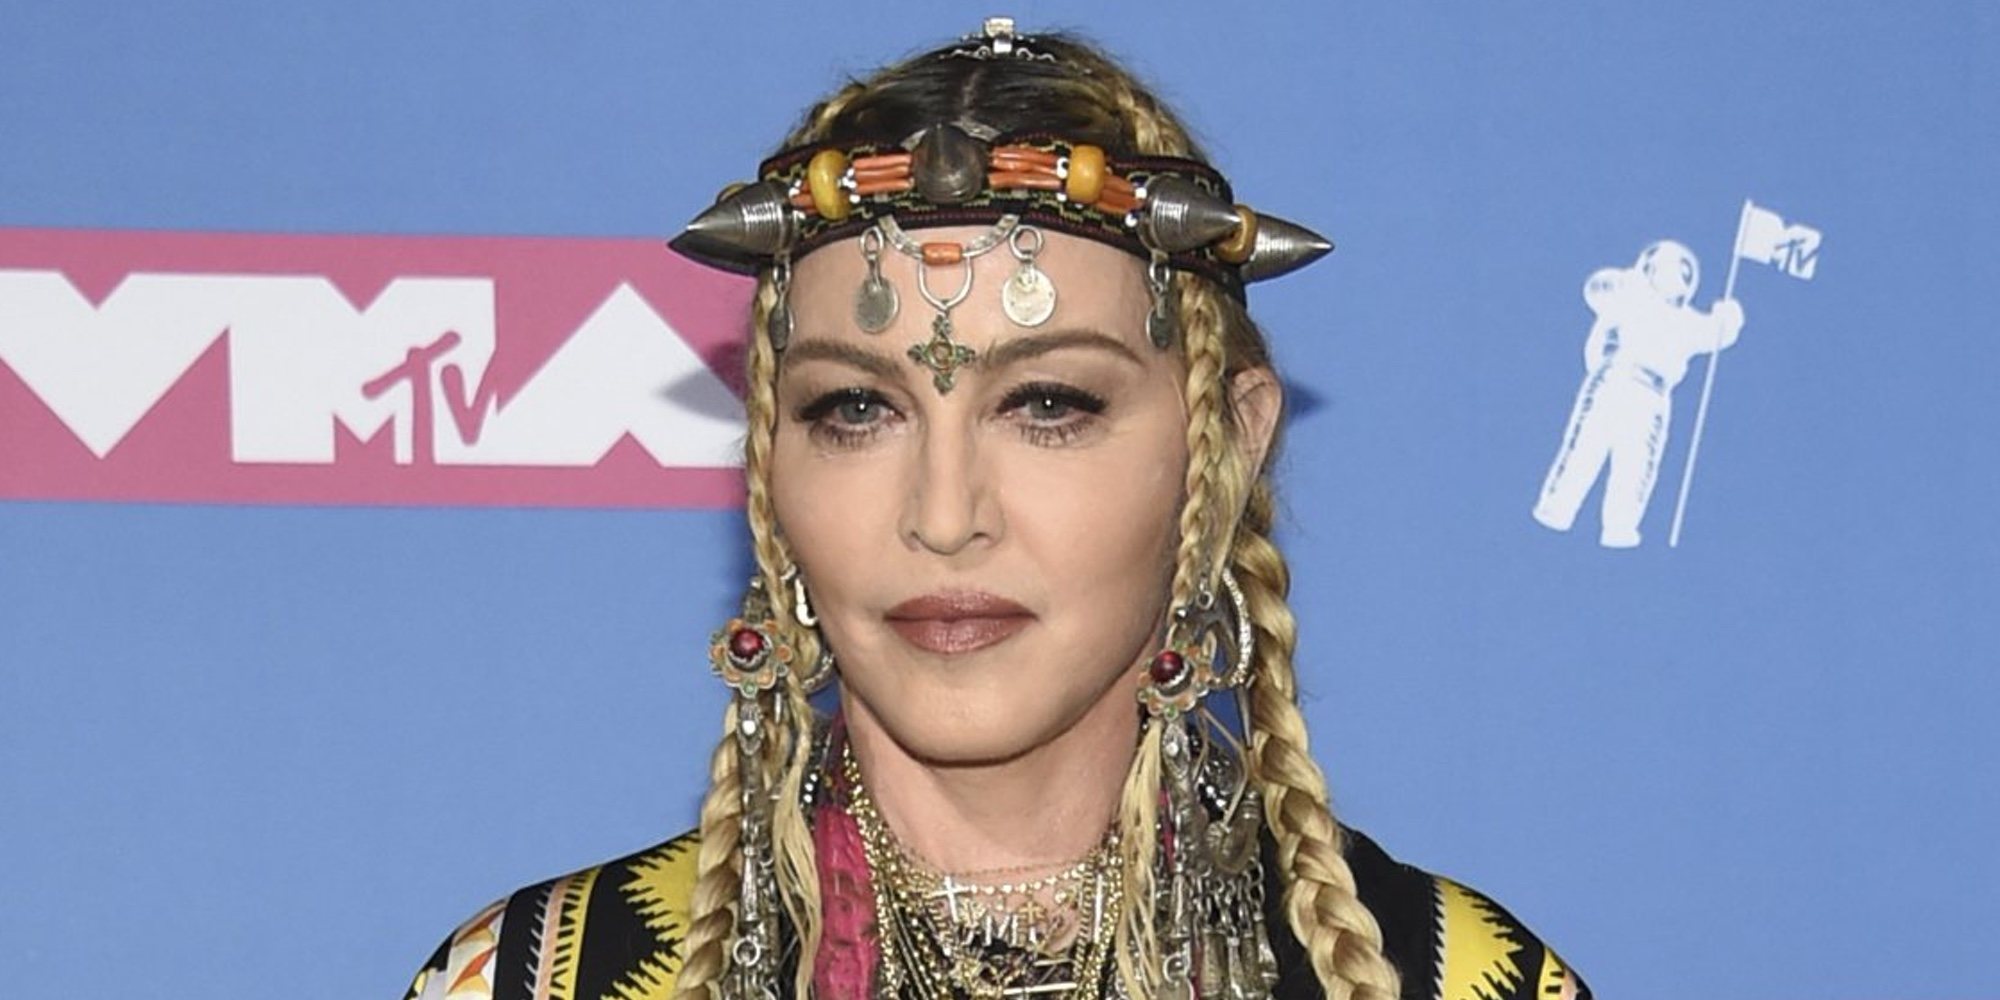 La venganza de Madonna para sus haters tras las críticas por su actuación en Eurovisión 2019